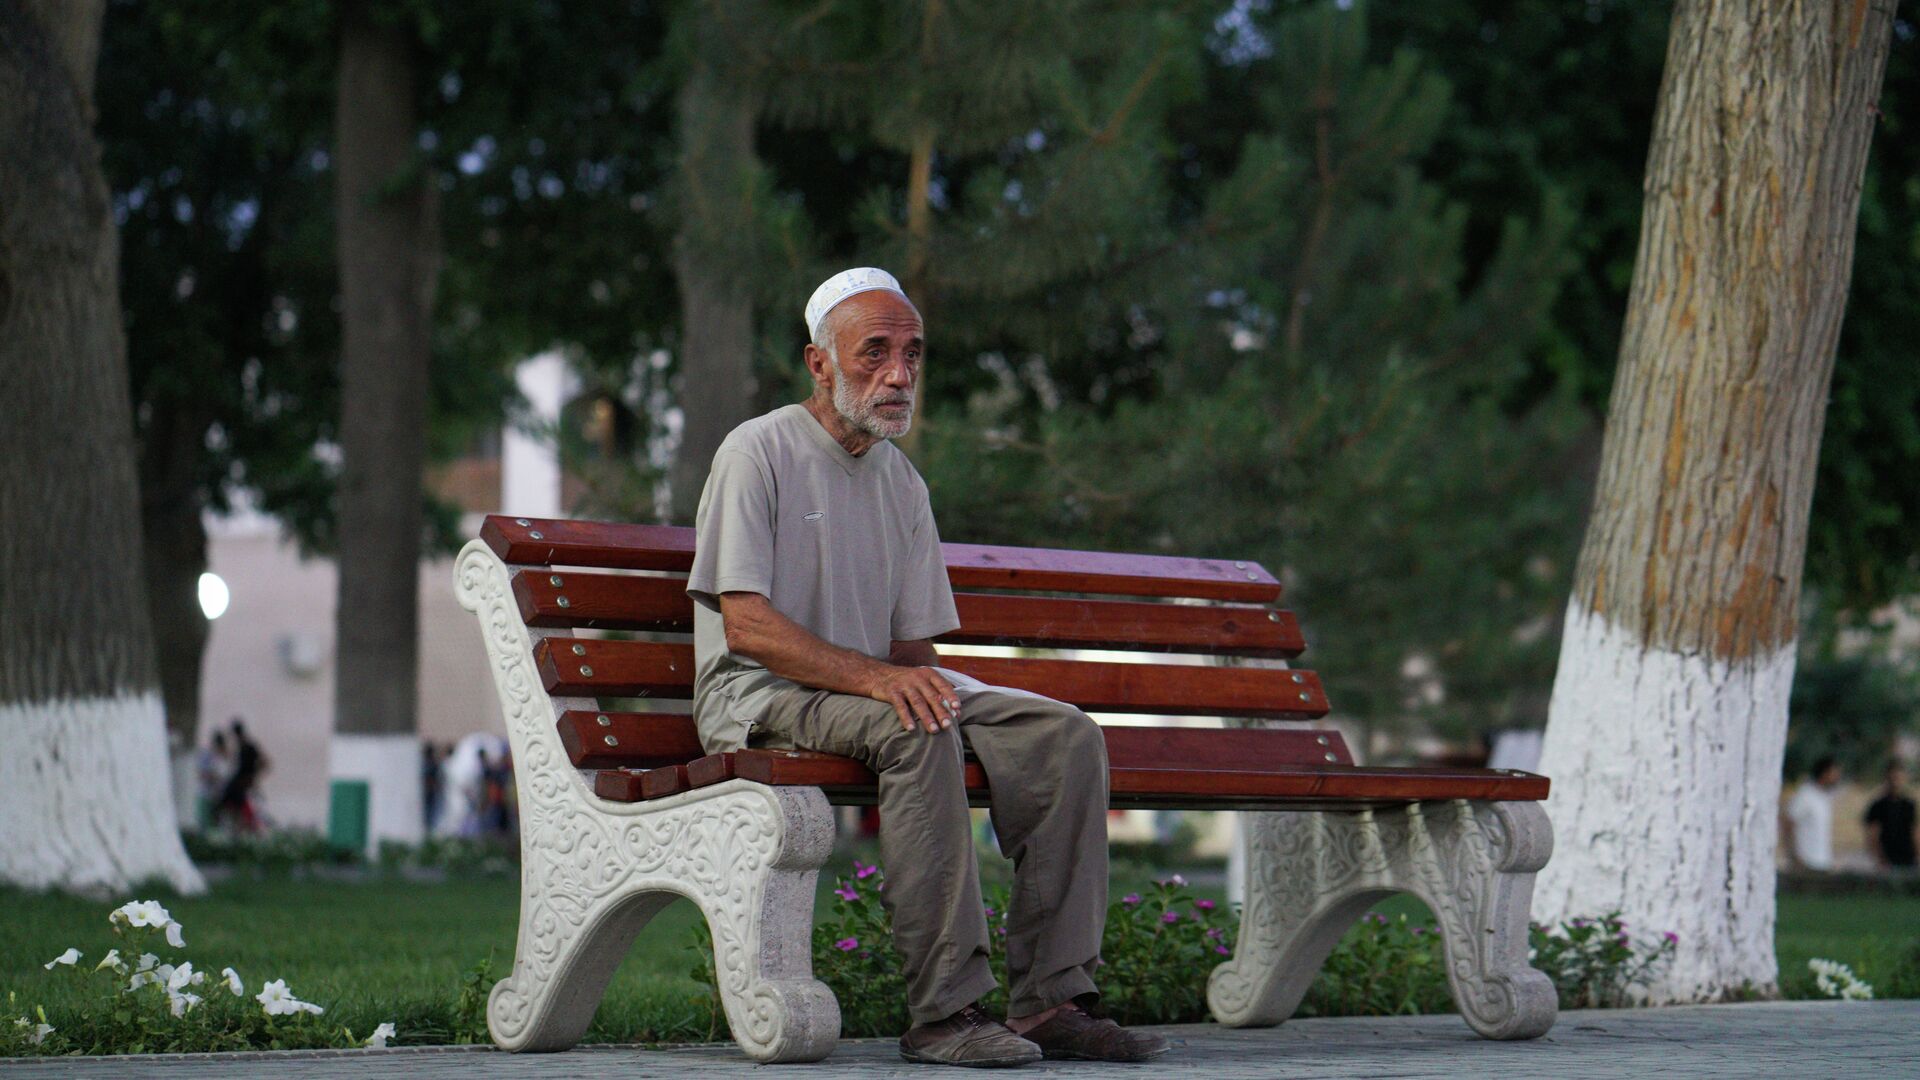 Пожилой человек сидит на скамейке, архивное фото - Sputnik Таджикистан, 1920, 21.07.2021